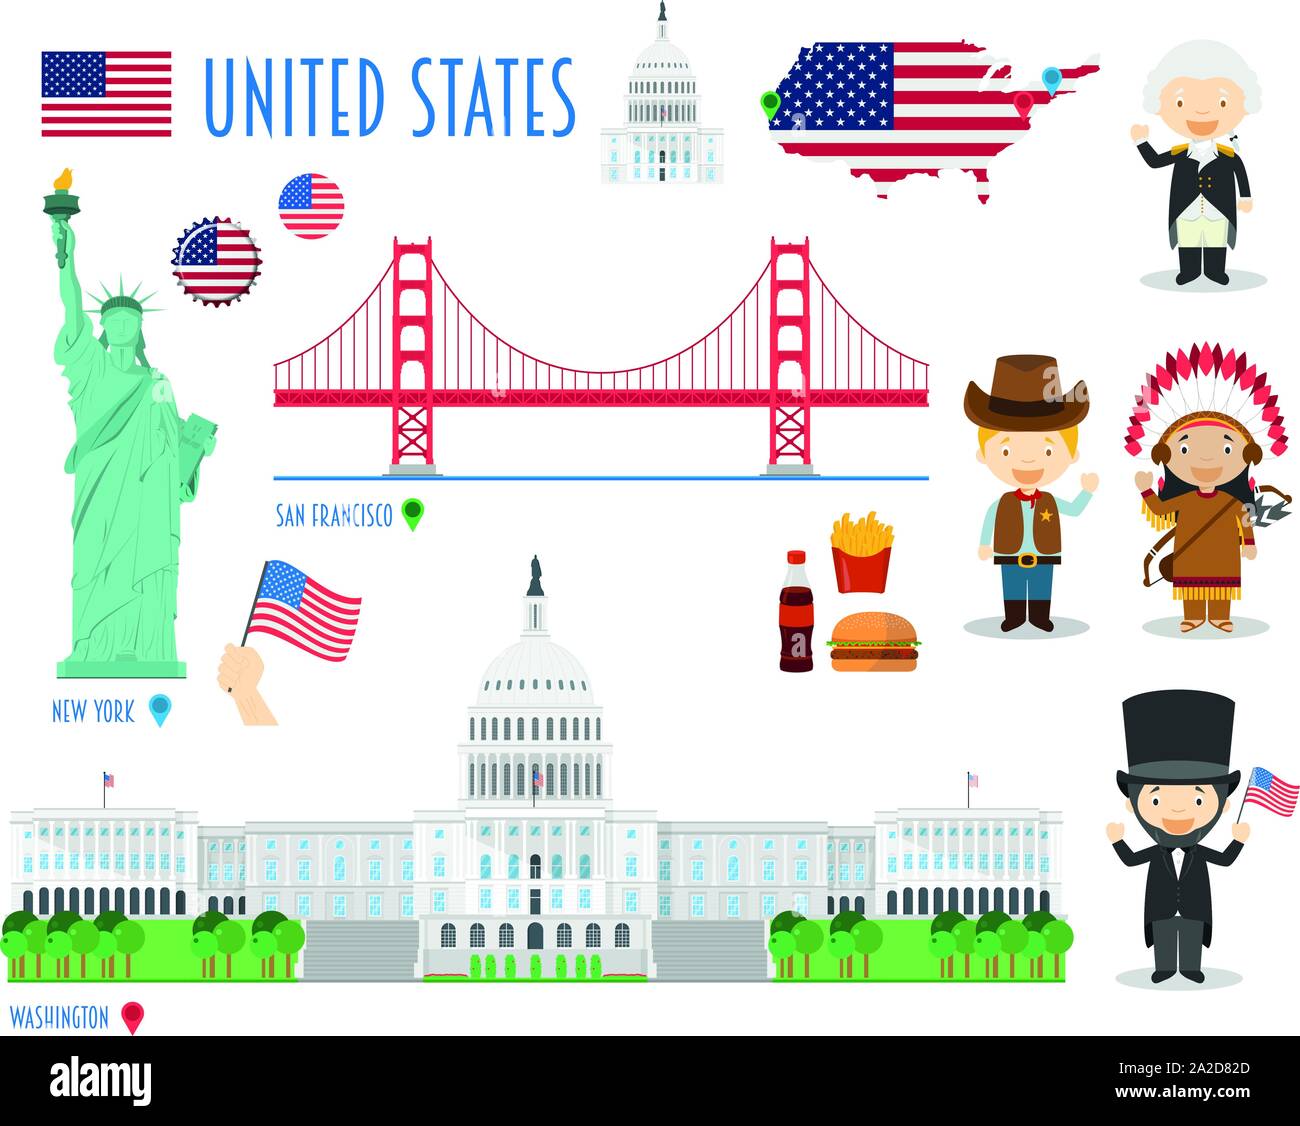 USA Flachbild Icon Set Reise- und Tourismus-Konzept. Vector Illustration Stock Vektor